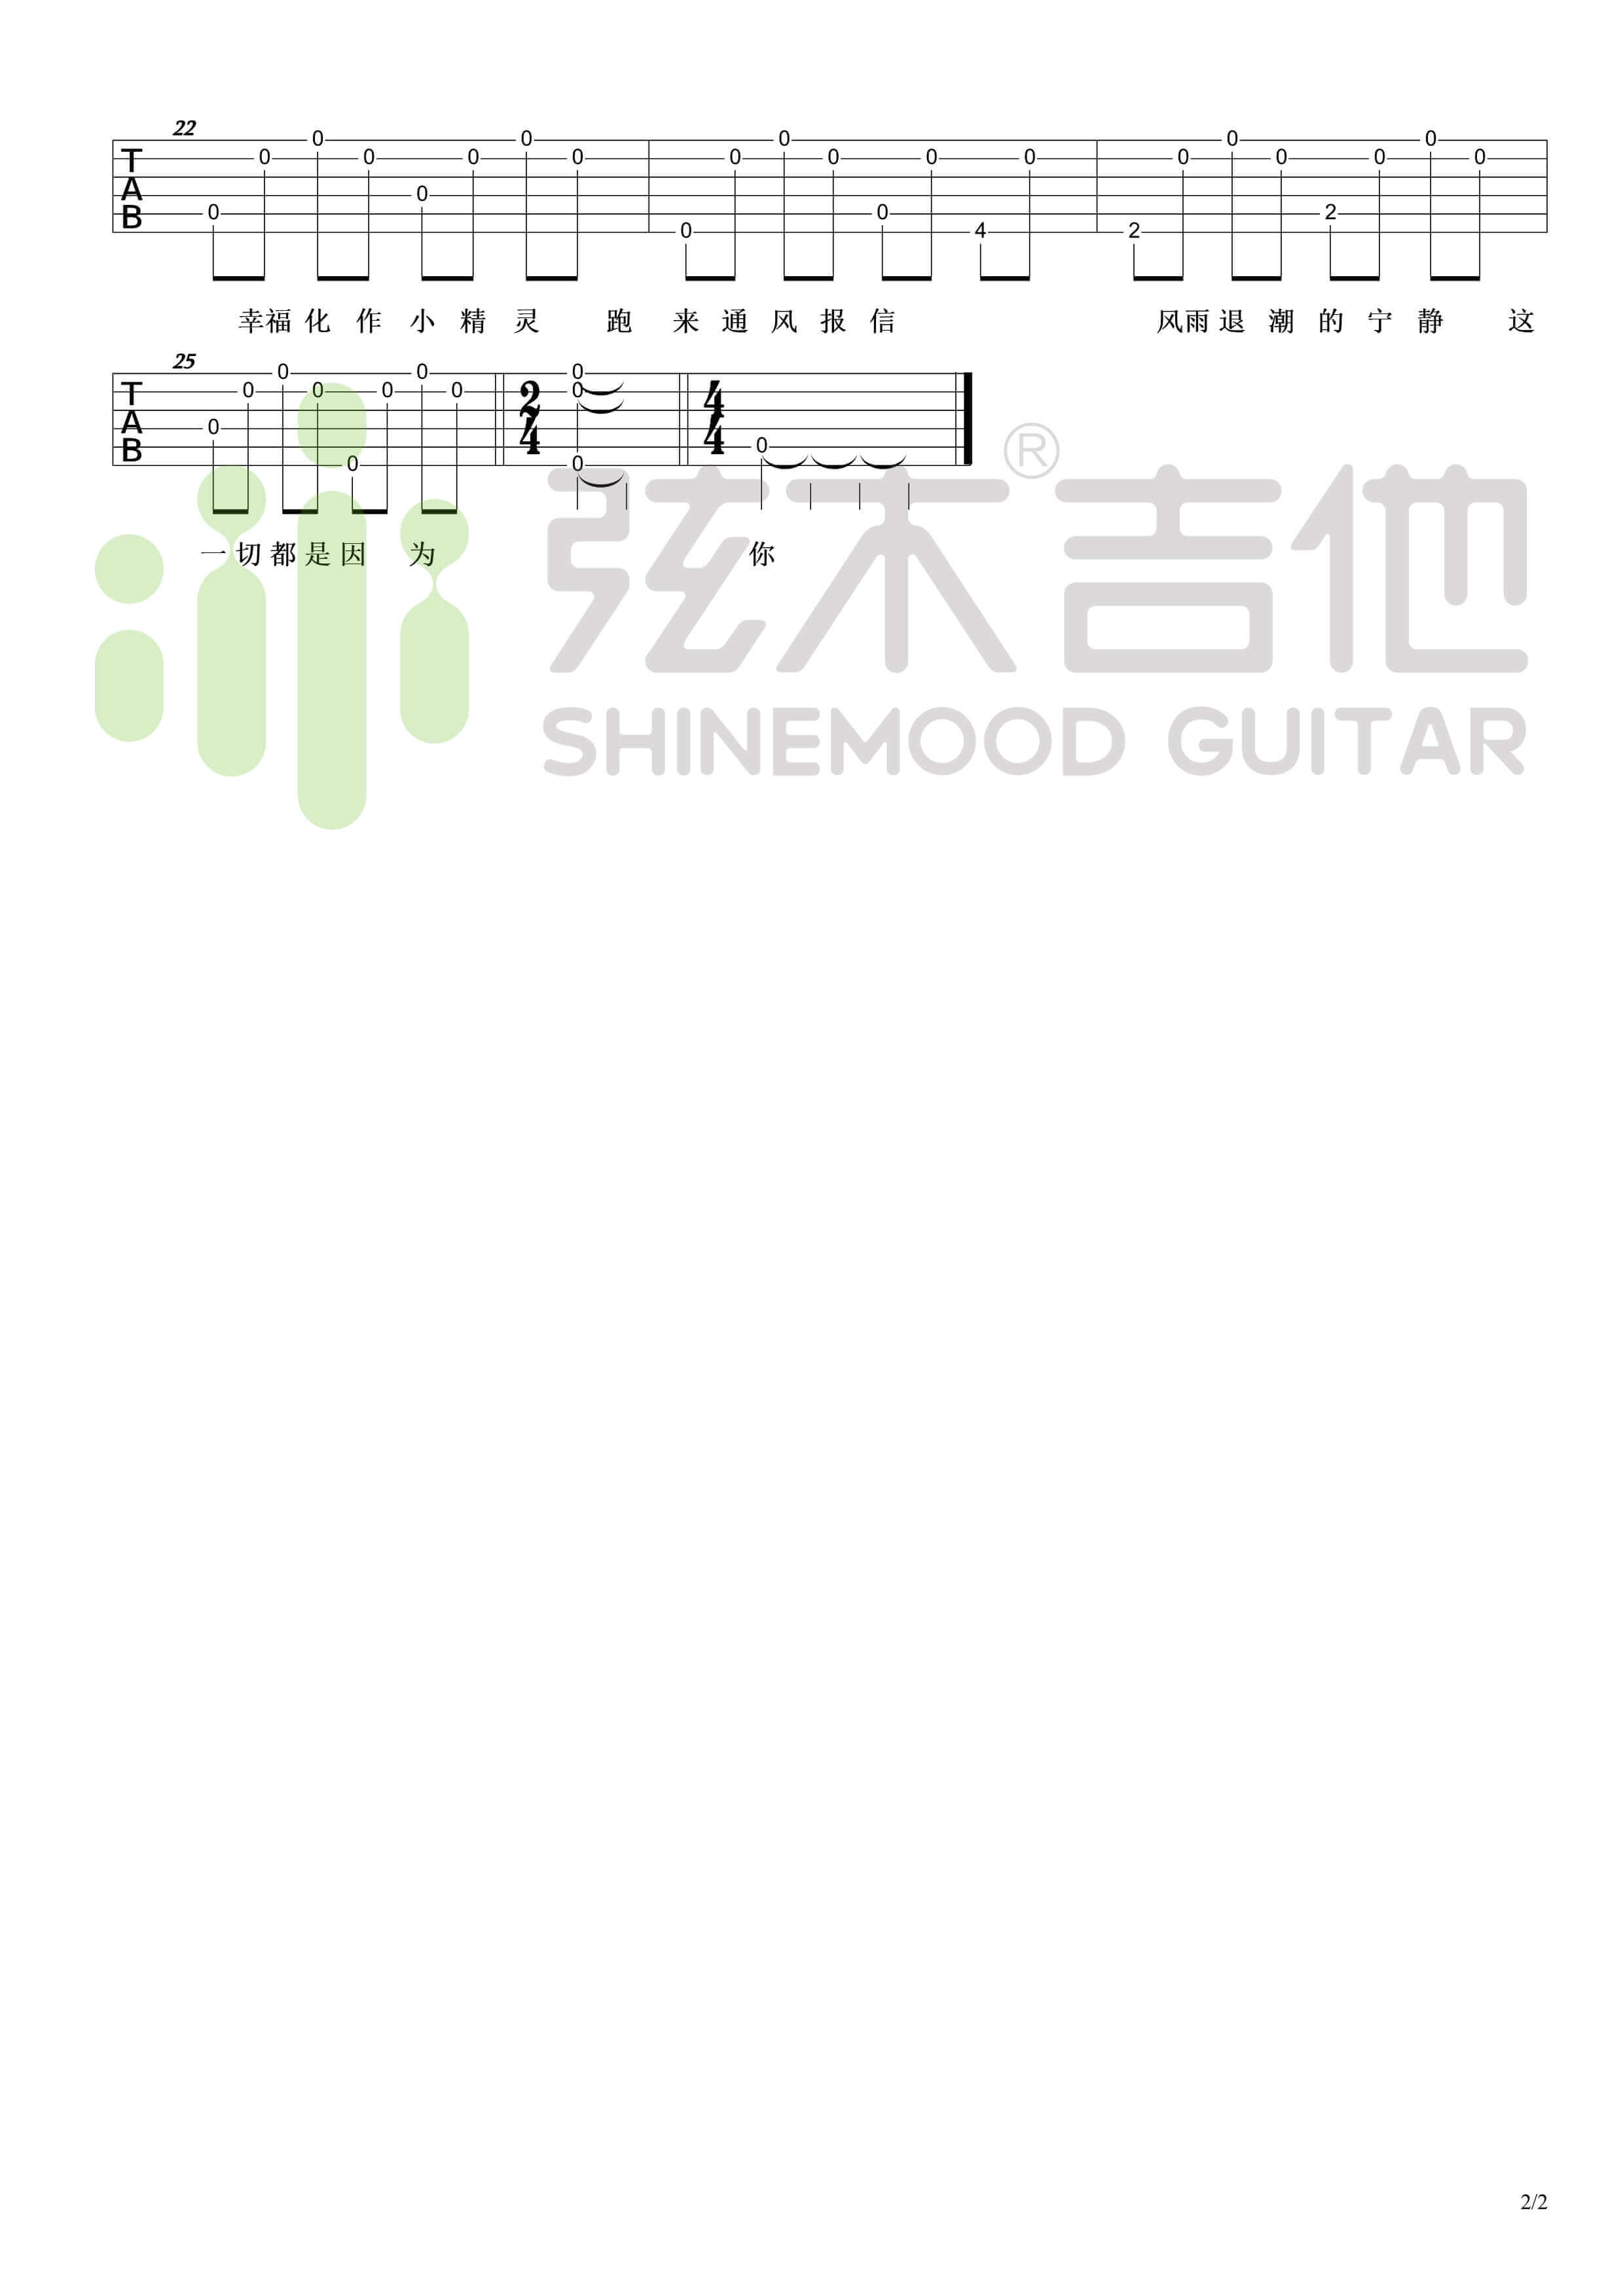 吴青峰《小精灵》超简单单音吉他谱-弦木吉他1